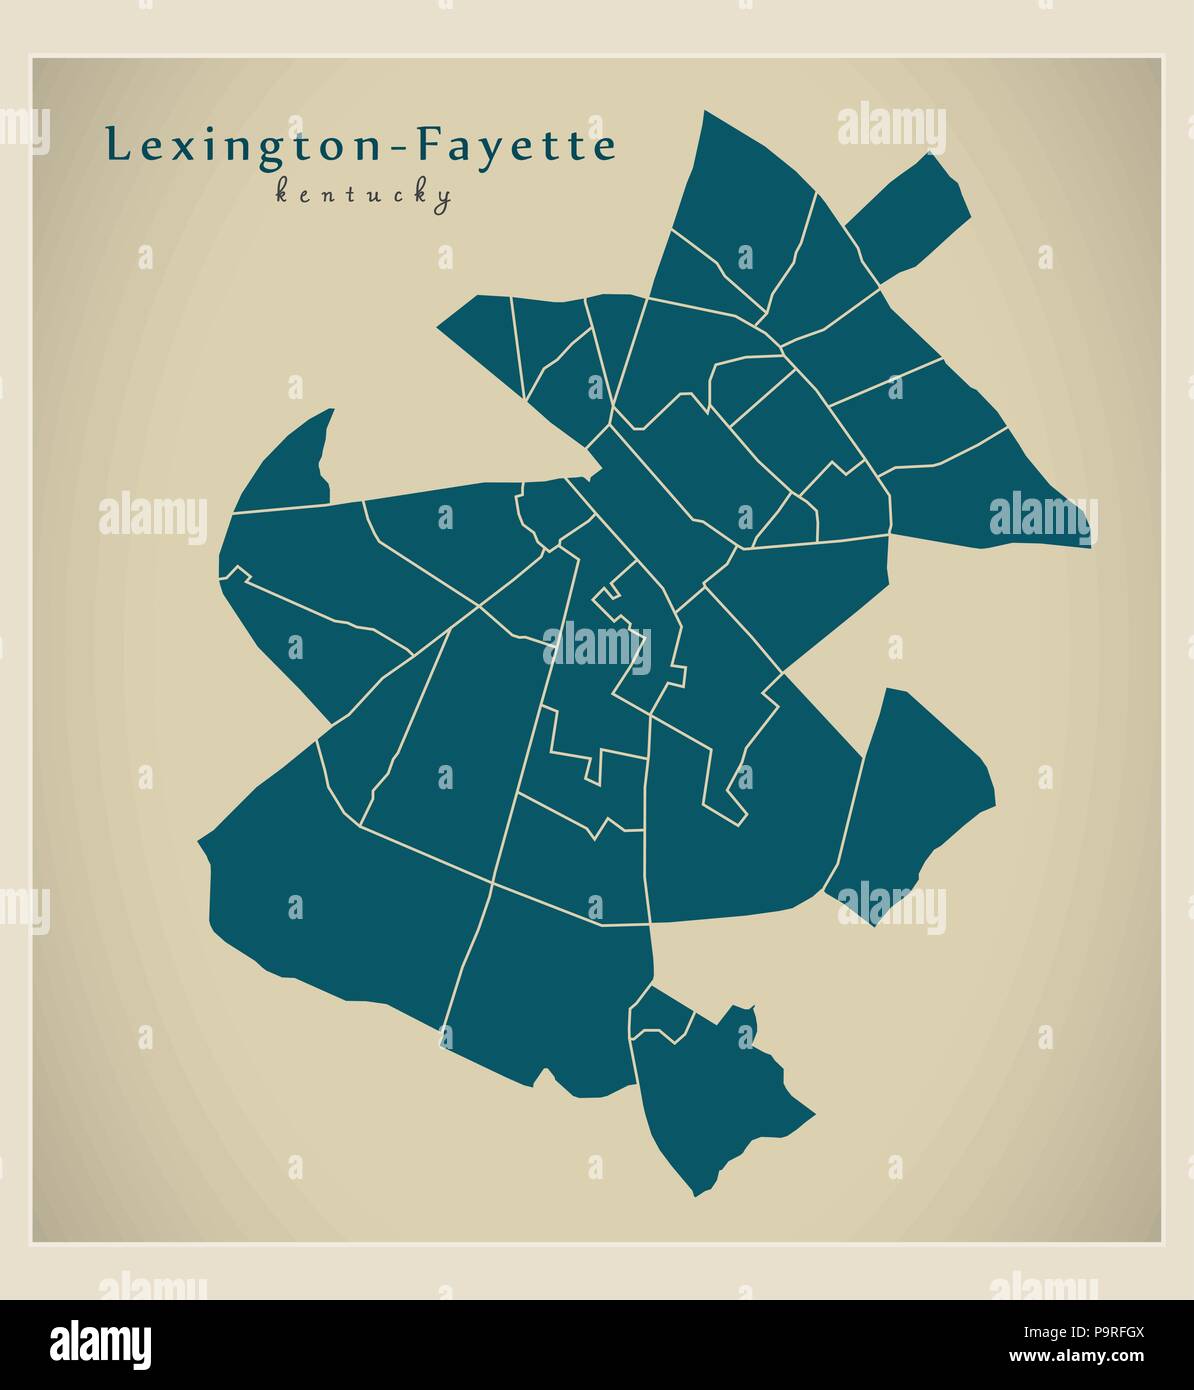 Città moderna mappa - Lexington-Fayette Kentucky città degli Stati Uniti con i quartieri Illustrazione Vettoriale